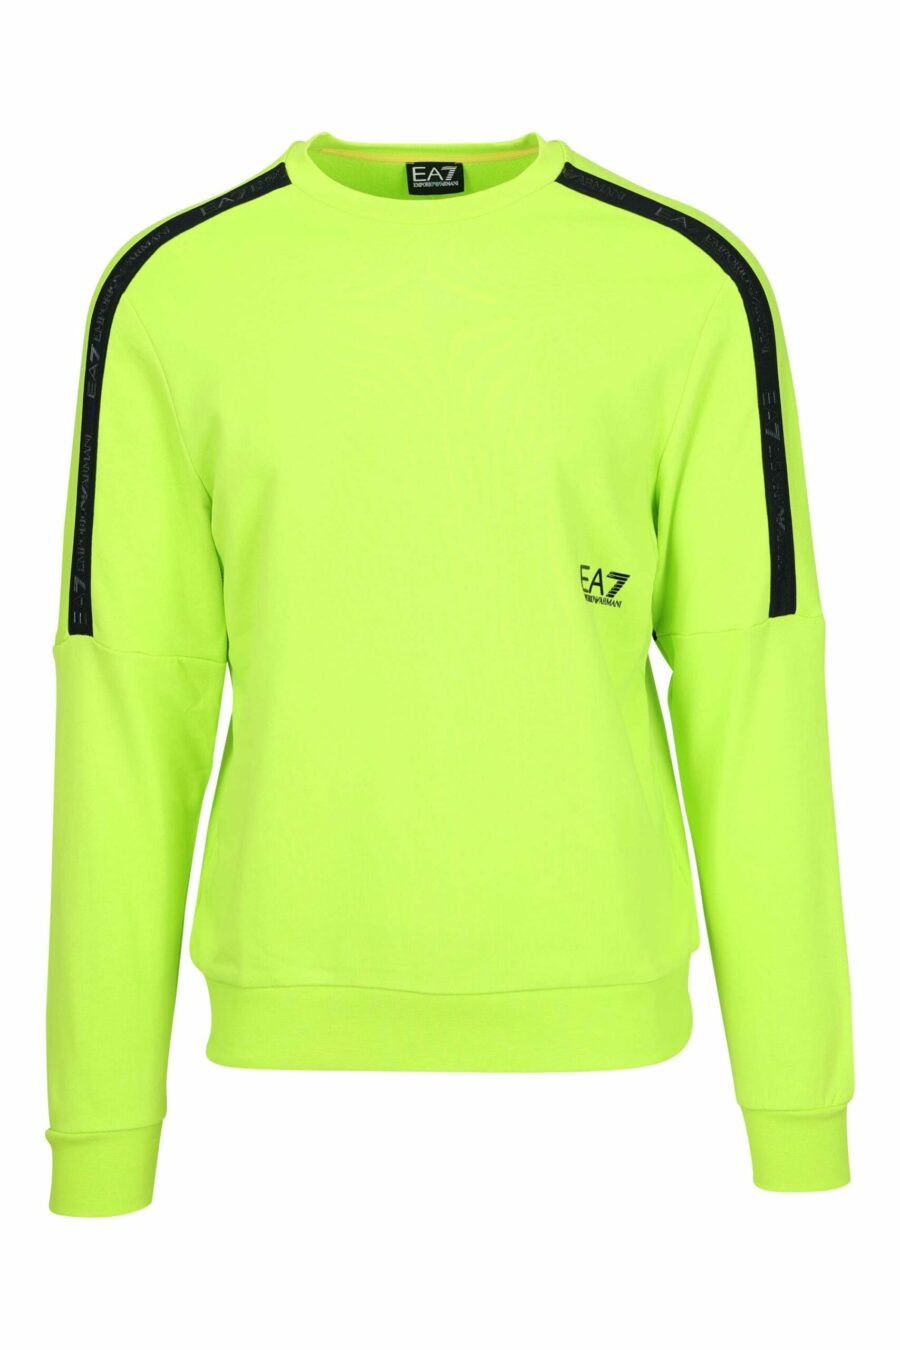 Lindgrünes Sweatshirt mit "lux identity"-Mini-Logo auf einfarbigem Band - 8057970709947 skaliert